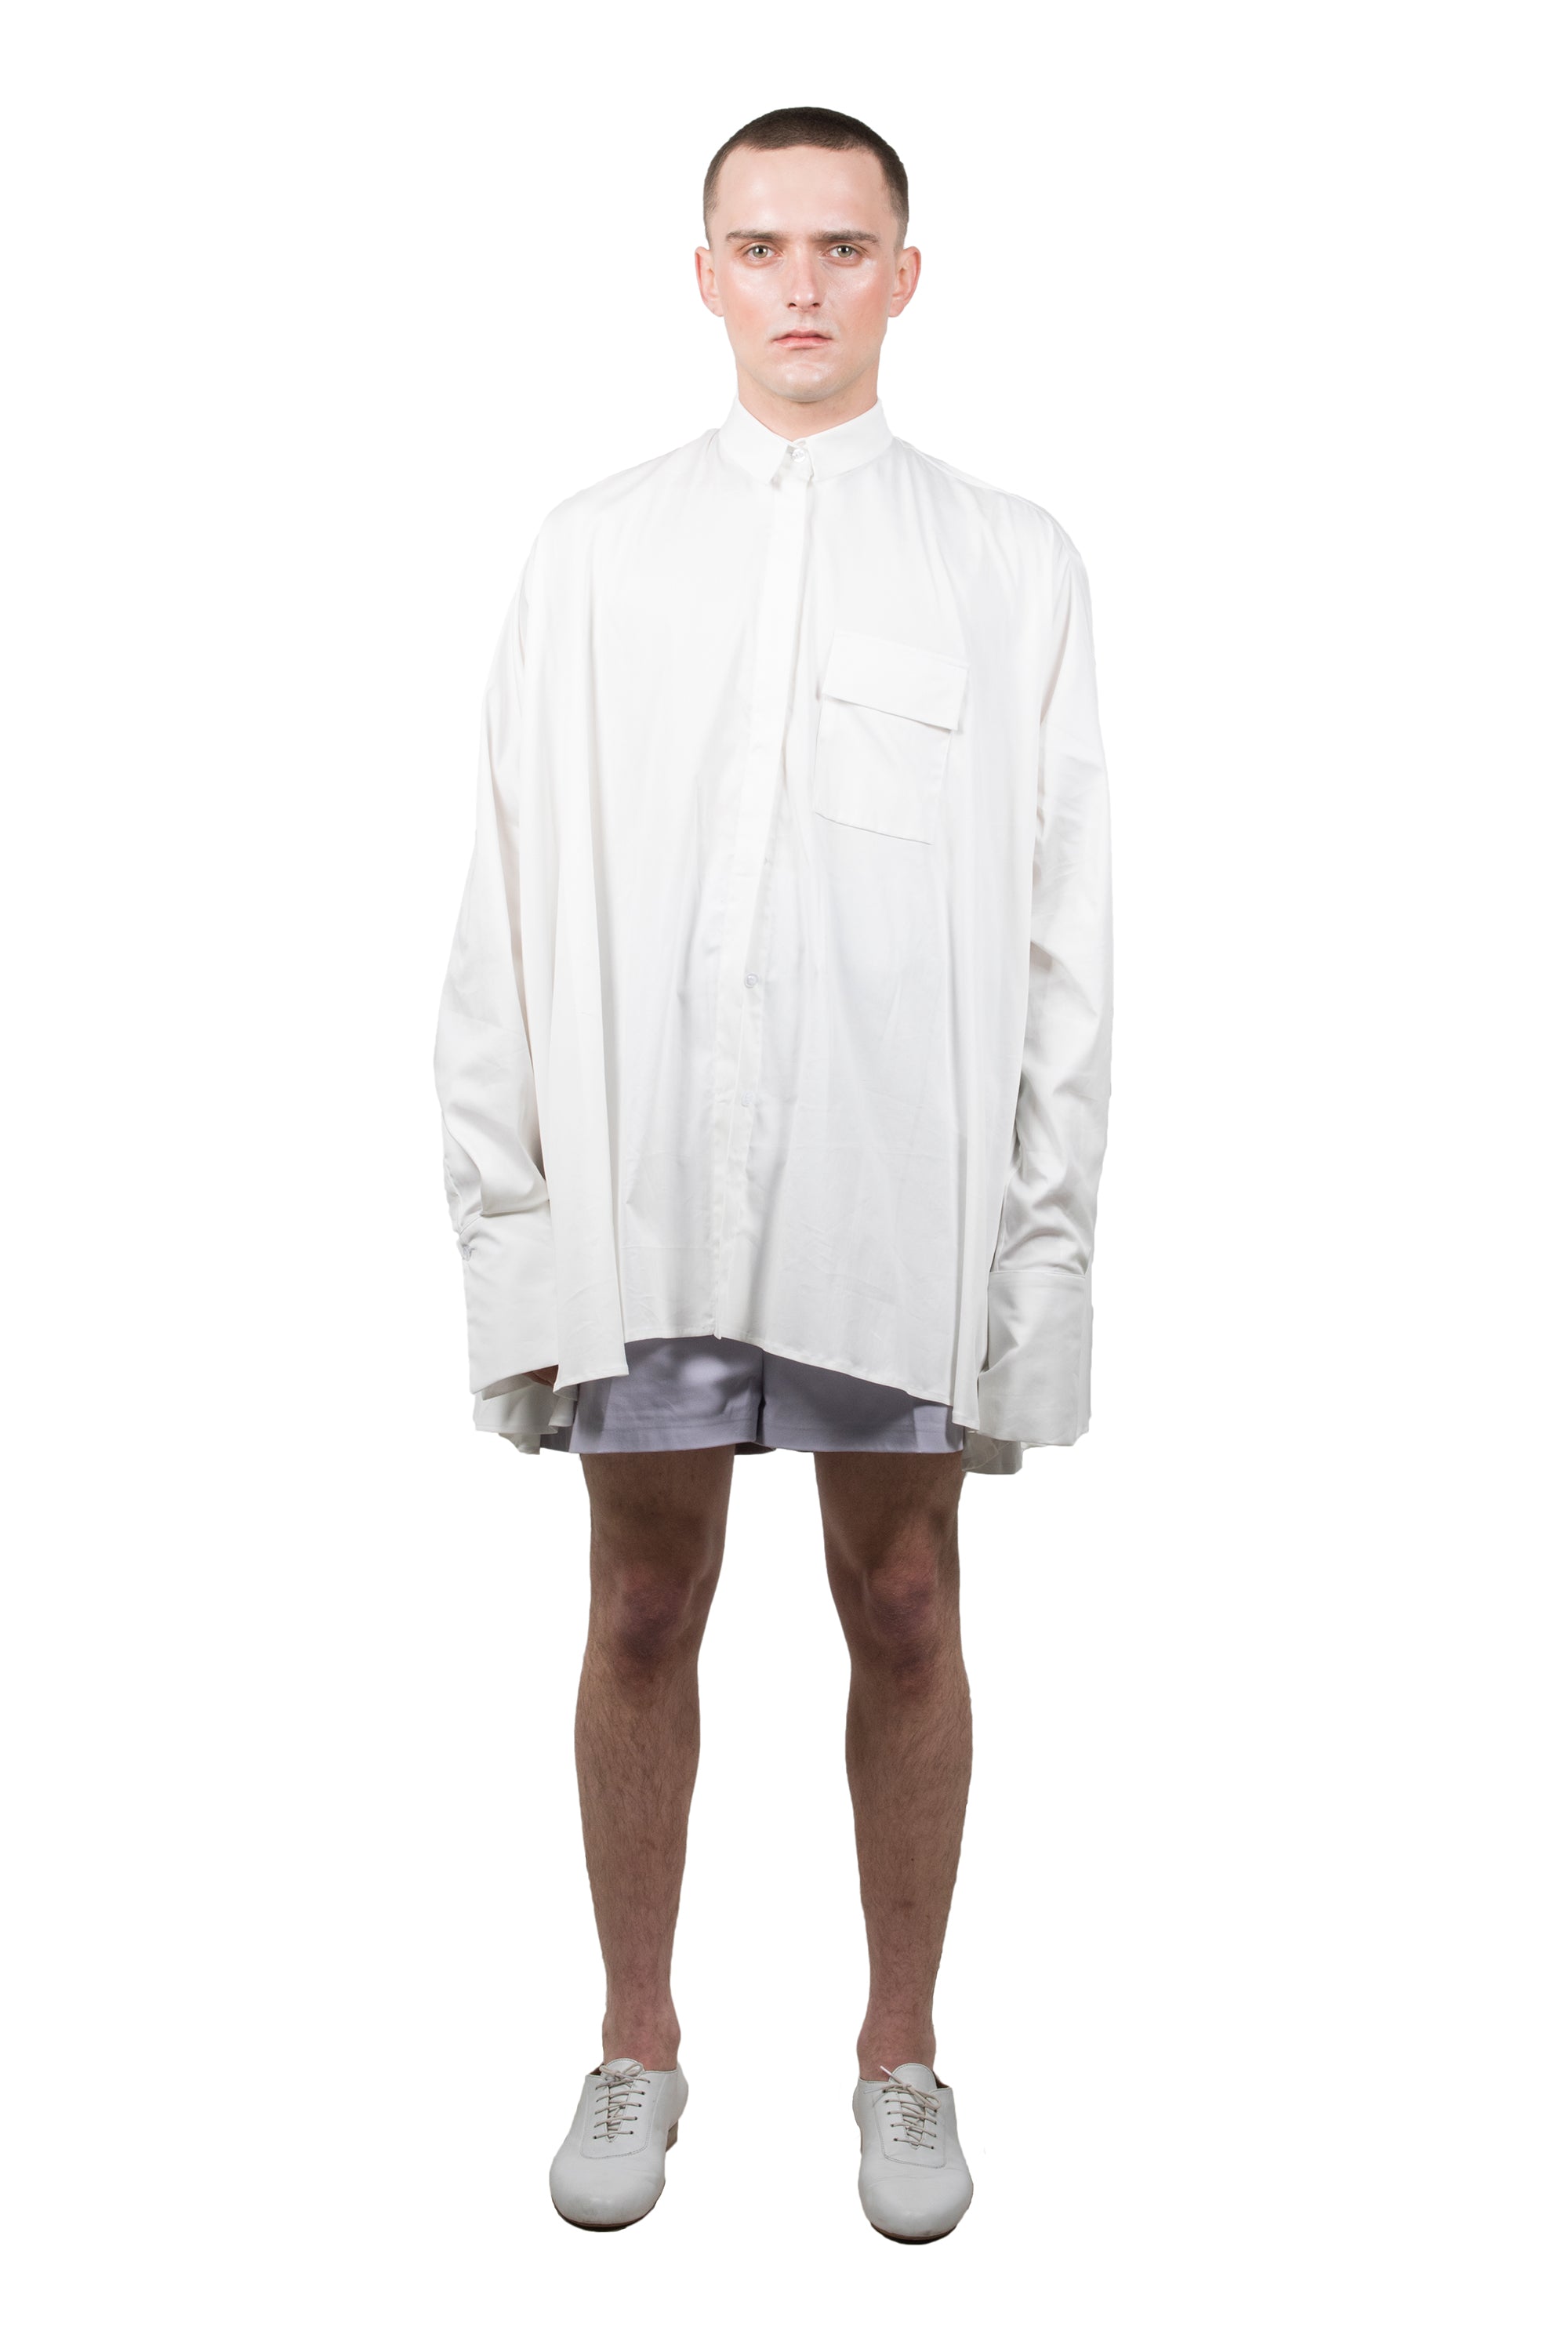 White Medusae Long-sleeved Shirt - Ludus Agender Label